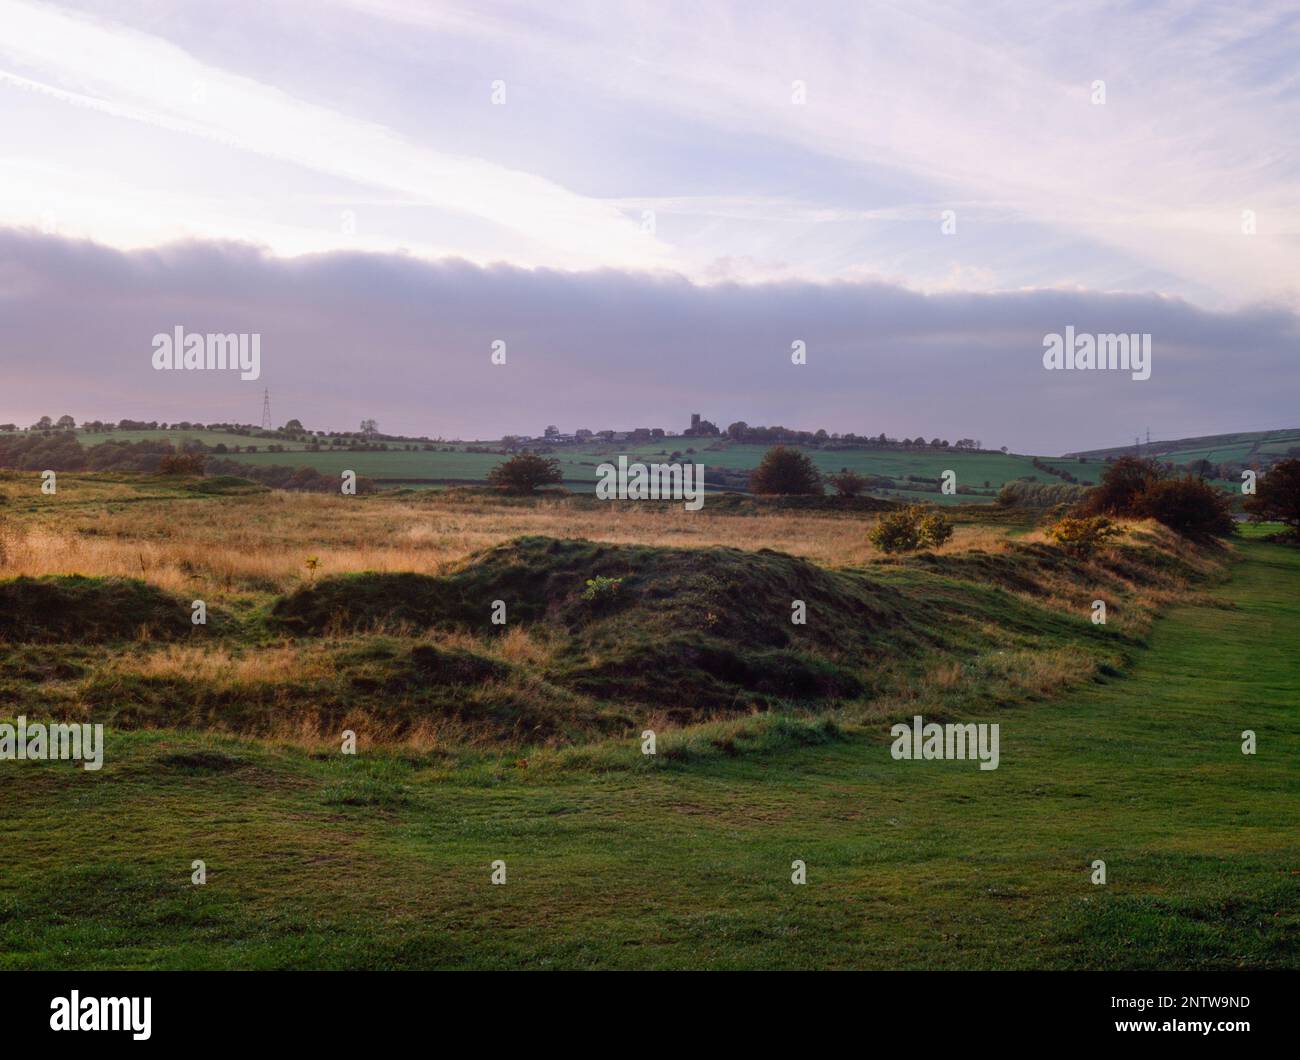 Angolo nord-est del forte romano del castello di Melandra, Derbyshire, Inghilterra, Regno Unito, guardando W verso Mottram a Longdendale: Mostra la posizione della torre d'angolo NE (centro) Foto Stock